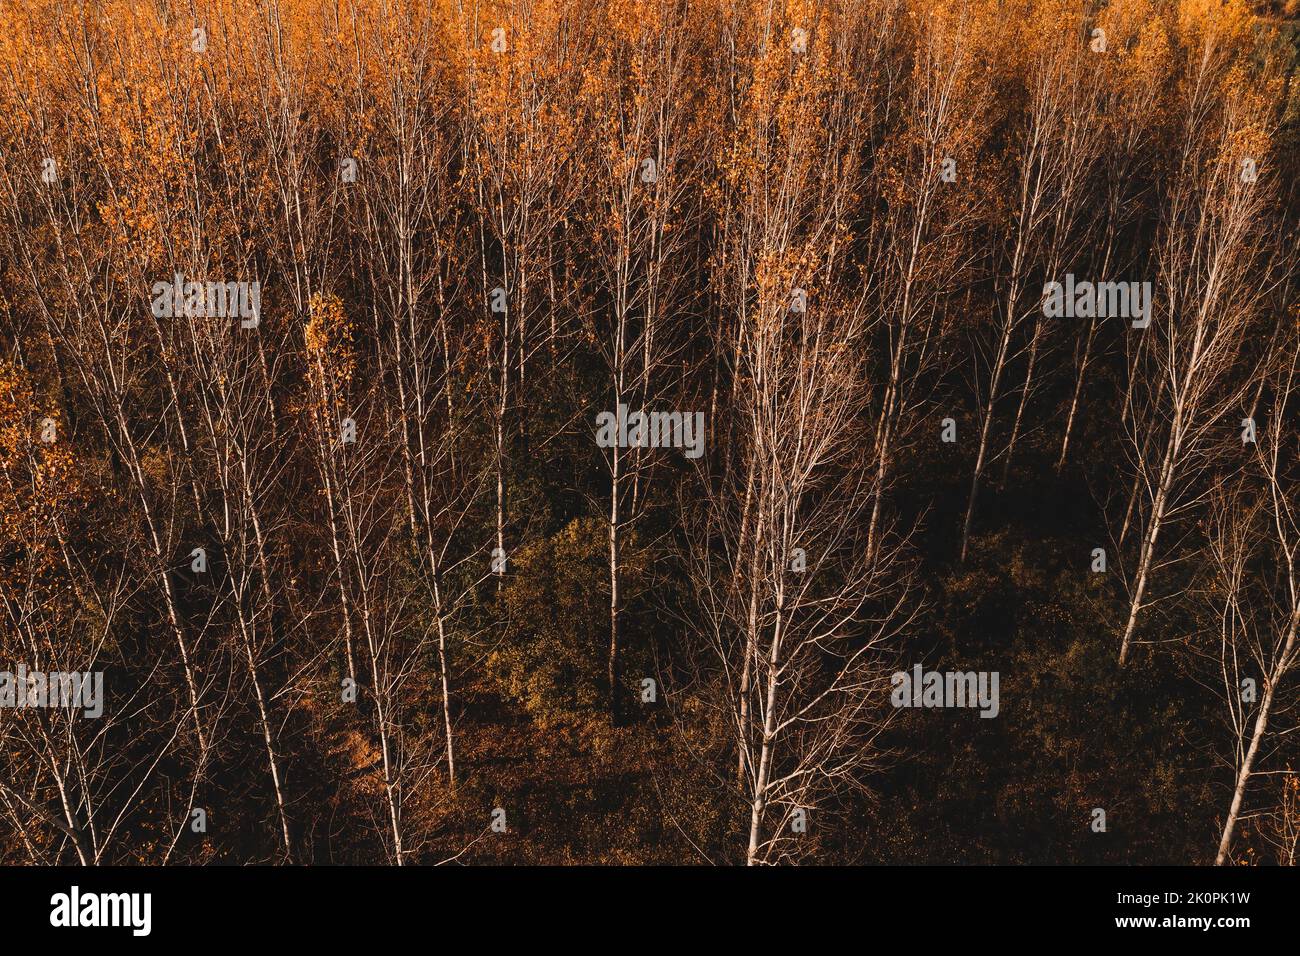 Saison d'automne dans la forêt à feuilles caduques.Prise de vue aérienne des arbres orange en automne après-midi depuis le drone pov. Banque D'Images